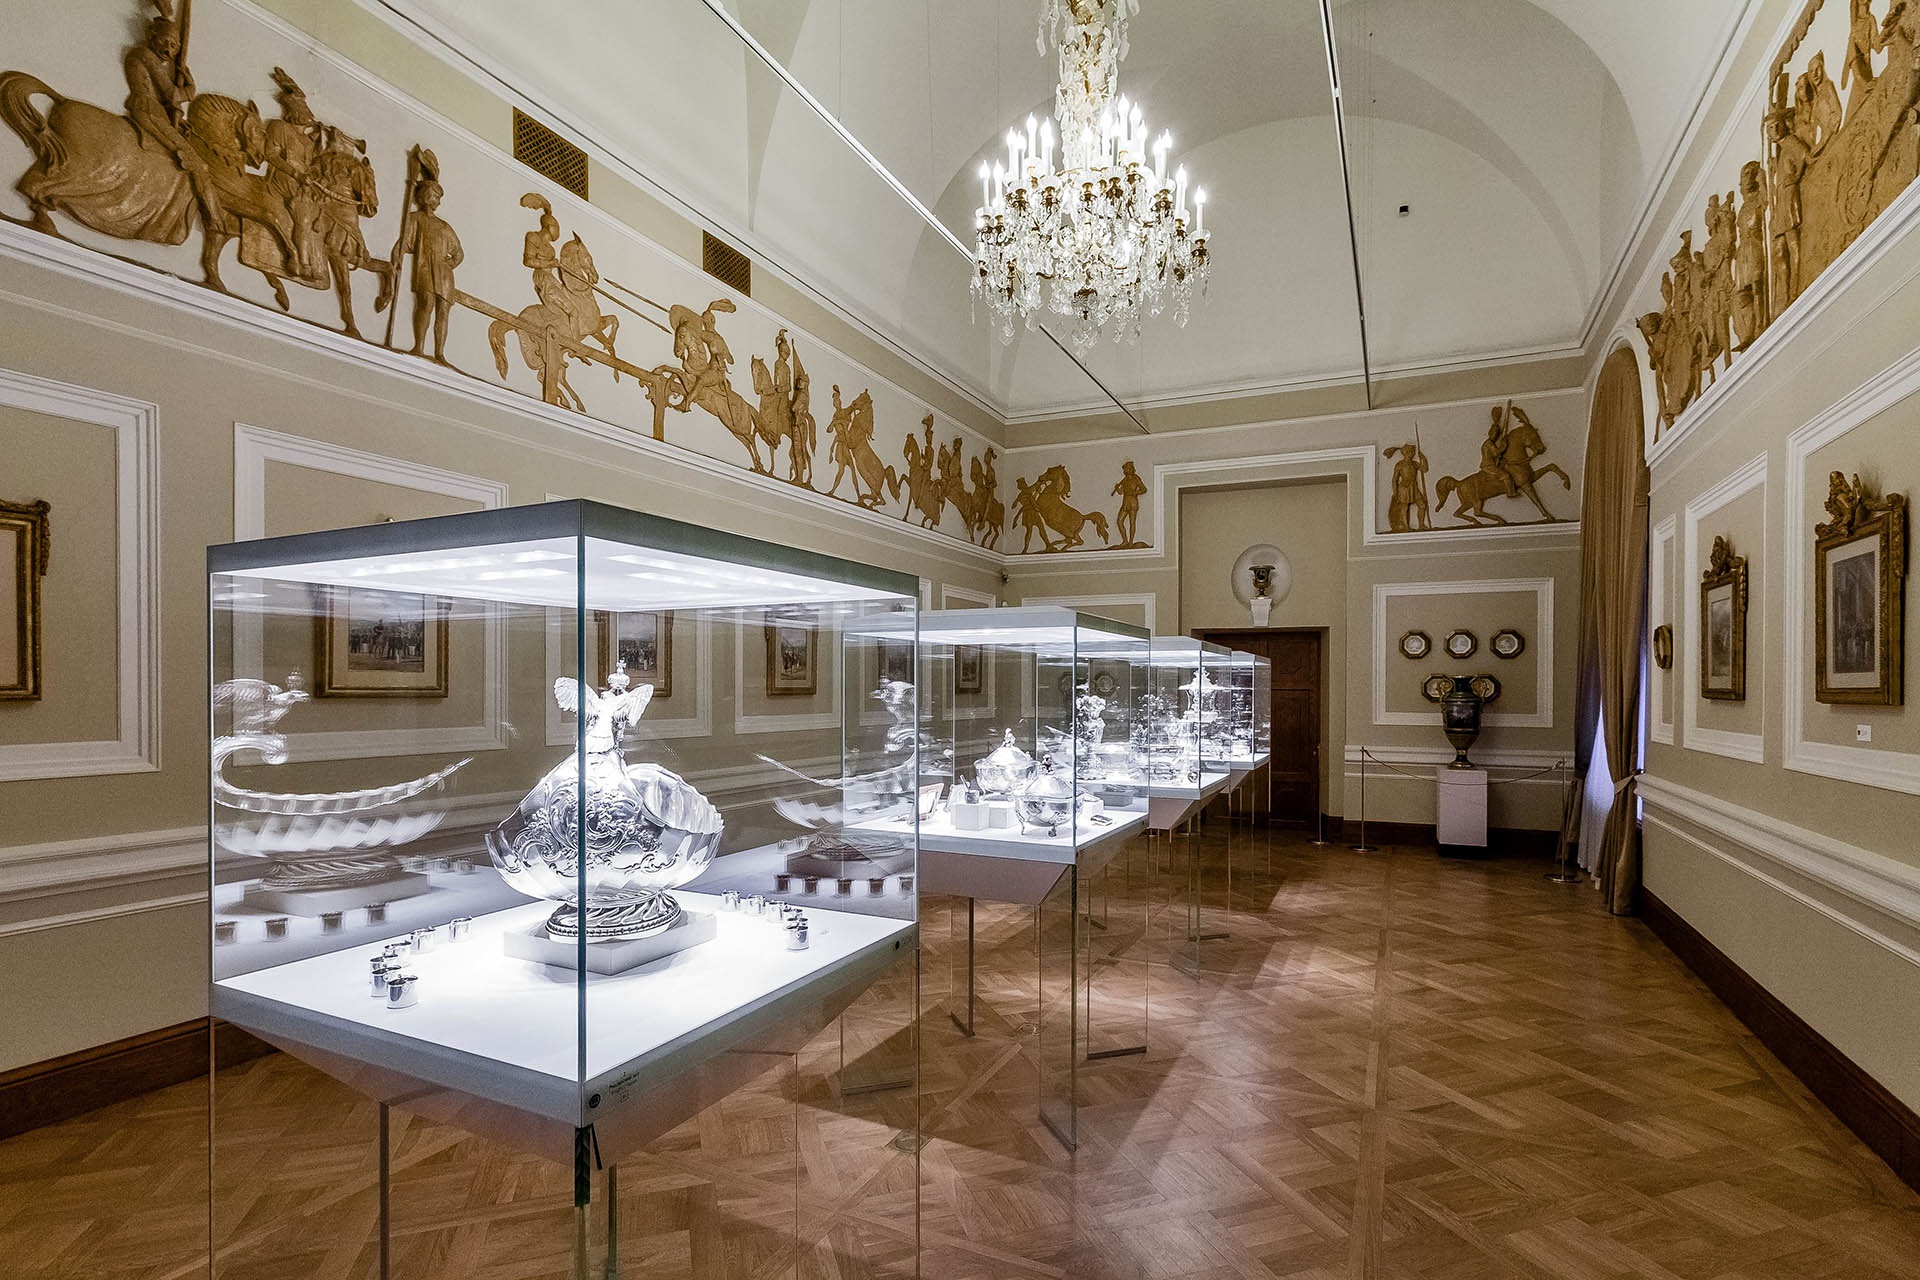 Музей фаберже в санкт-петербурге: обзор залов и знакомство с экспонатами